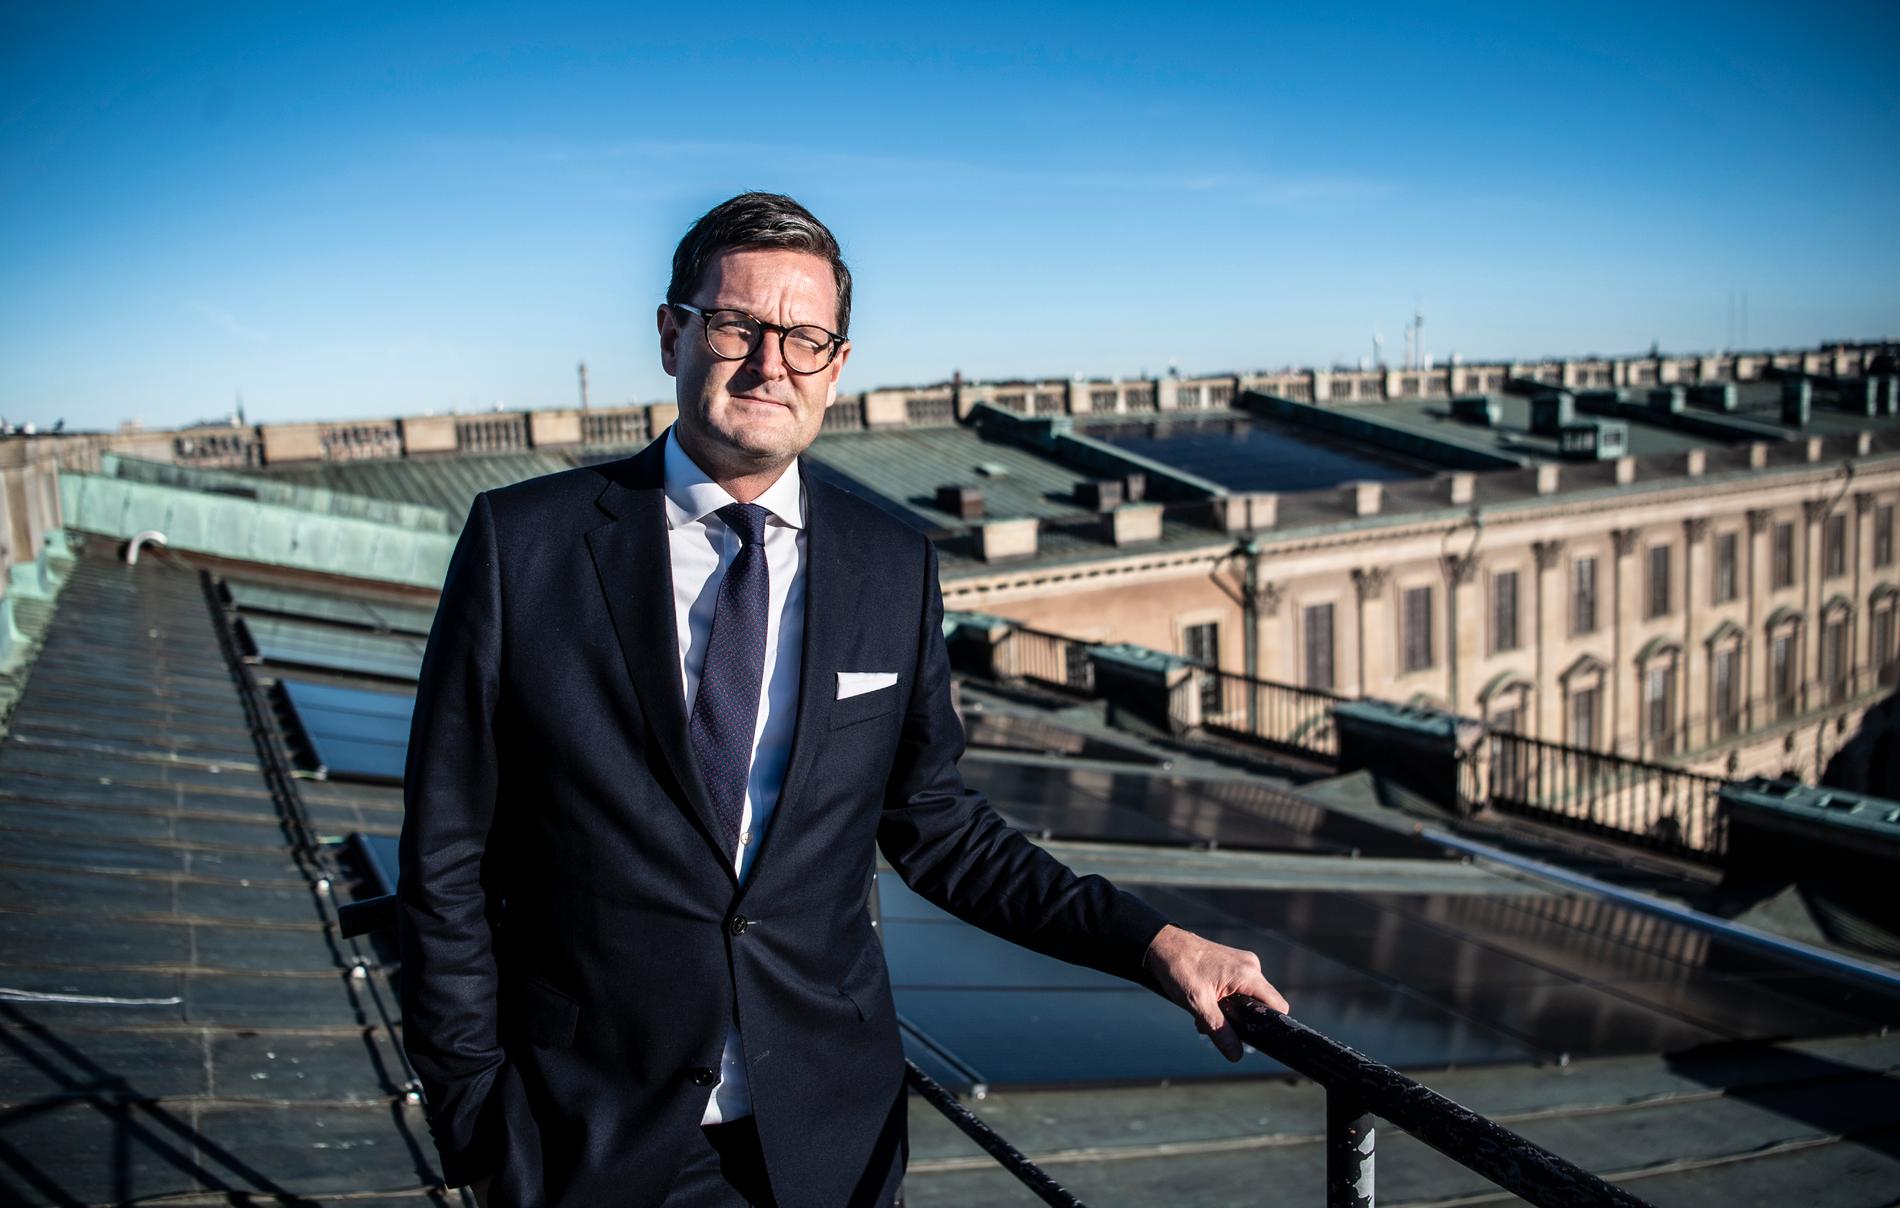 Erik Kampmann är slottsfogde på Kungliga slottet. Han visar de solpaneler som monterades på slottets tak 2018. Snart kommer ytterligare 1600 kvadratmeter av slottets tak att täckas av solceller. 